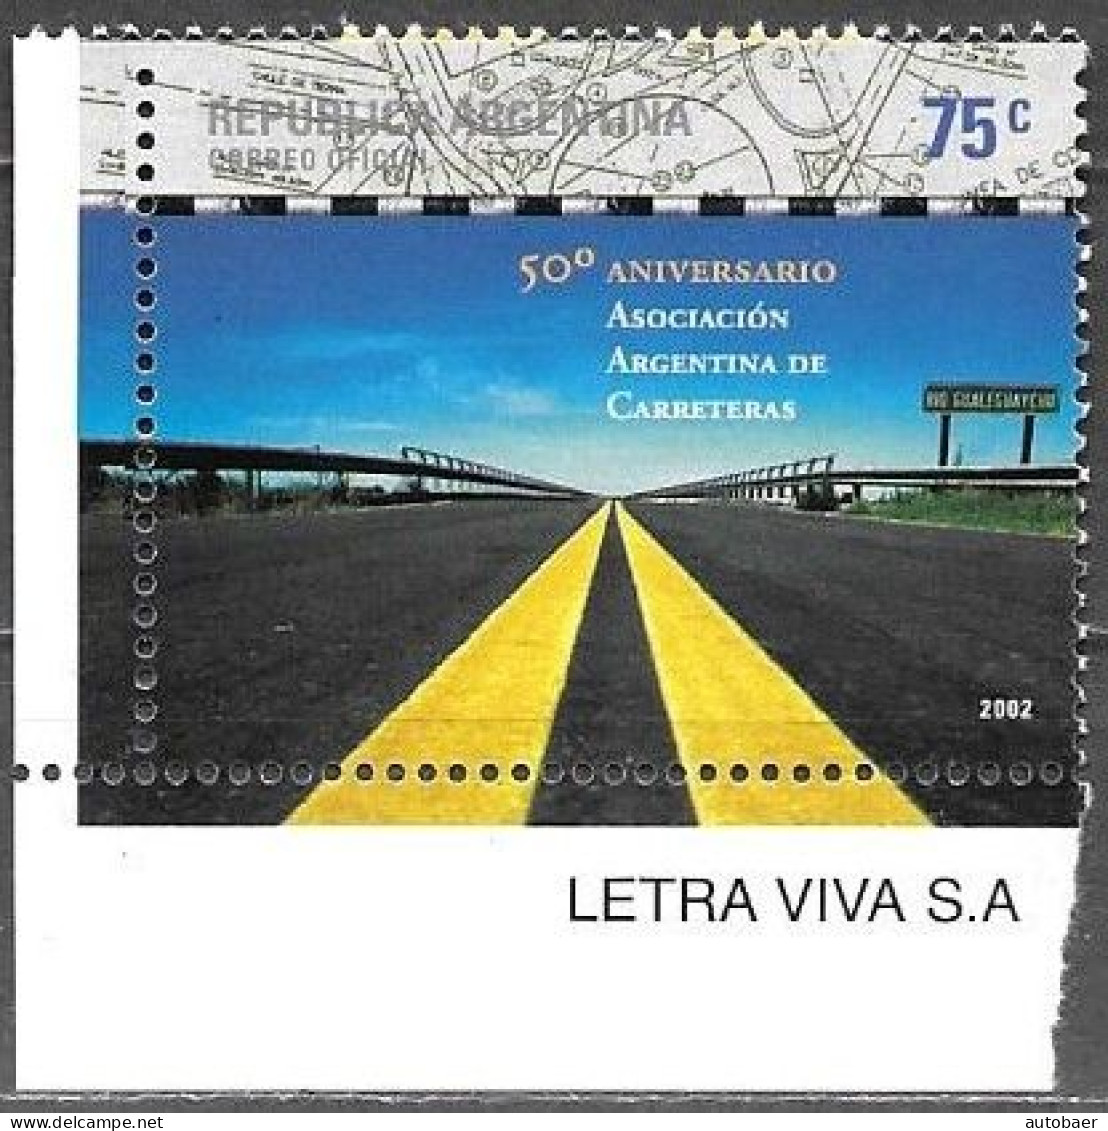 Argentina 2002 50 Aniversario Asociacion Argentina De Carreteras Mi. 2776 MNH Postfrisch Neuf ** - Ungebraucht